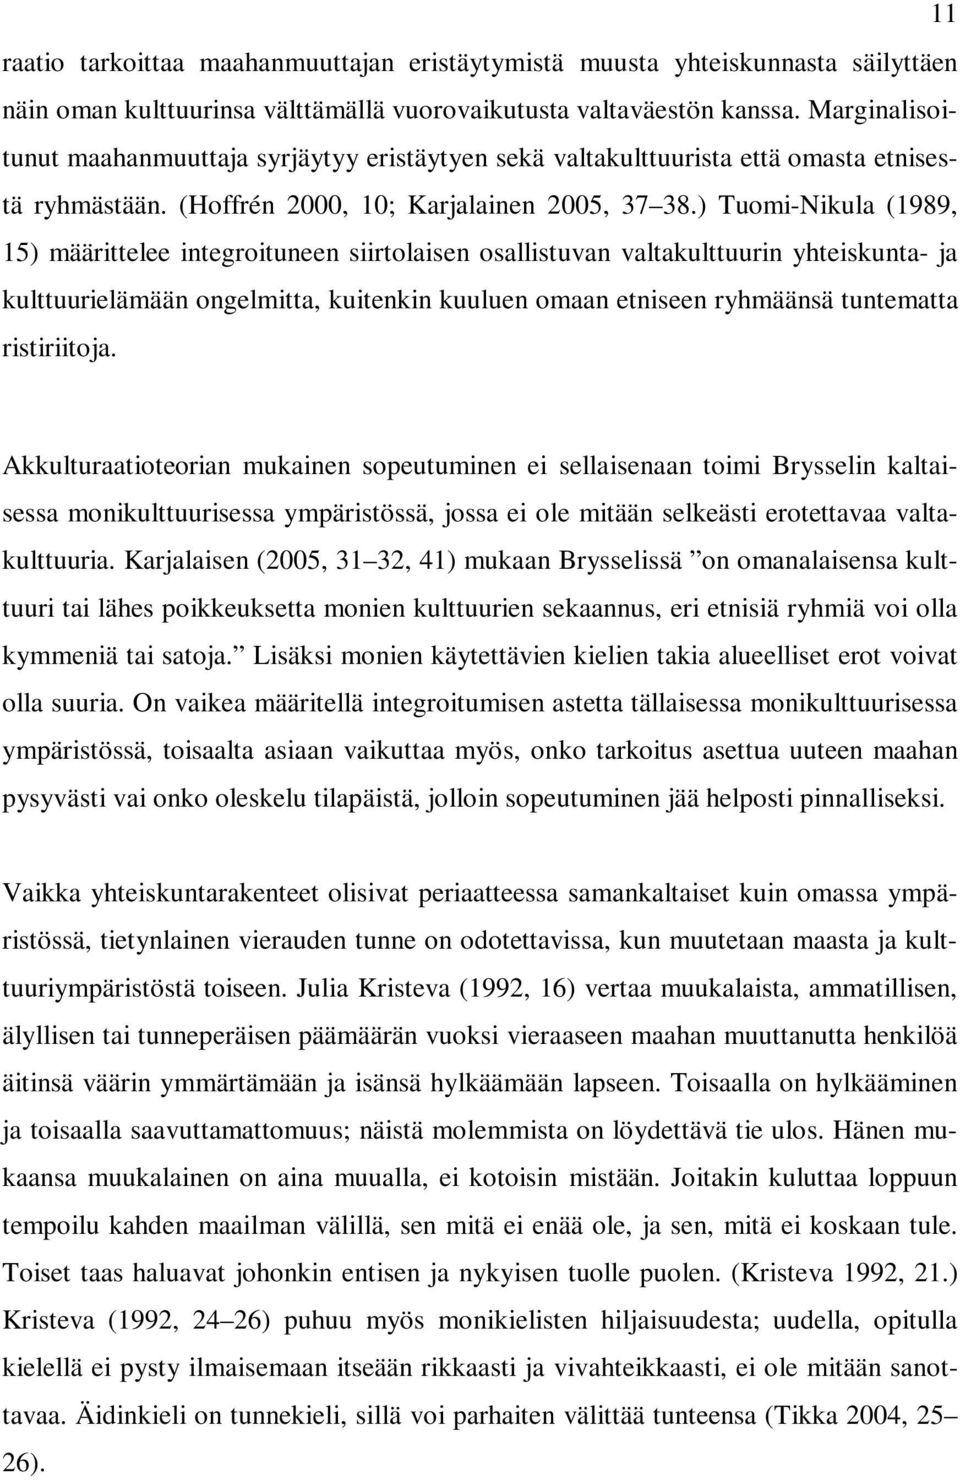 ) Tuomi-Nikula (1989, 15) määrittelee integroituneen siirtolaisen osallistuvan valtakulttuurin yhteiskunta- ja kulttuurielämään ongelmitta, kuitenkin kuuluen omaan etniseen ryhmäänsä tuntematta